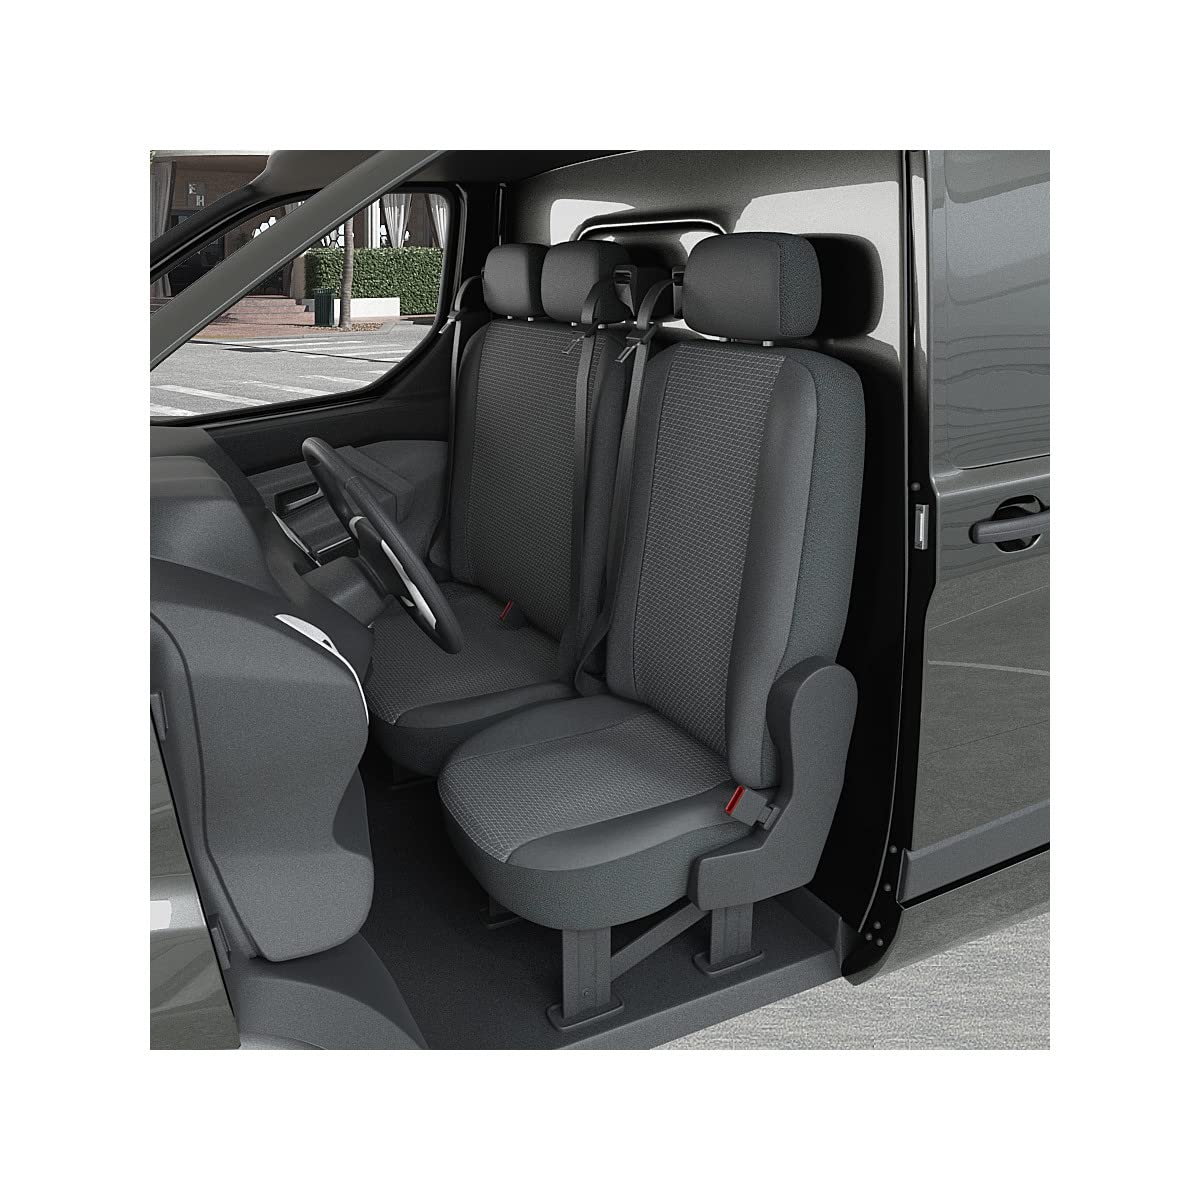 DBS 1013184 Sitzbezug für Auto/Nutzfahrzeuge, Kunstleder, schnelle Montage, kompatibel mit Airbag-Isofix-1013184 von DBS